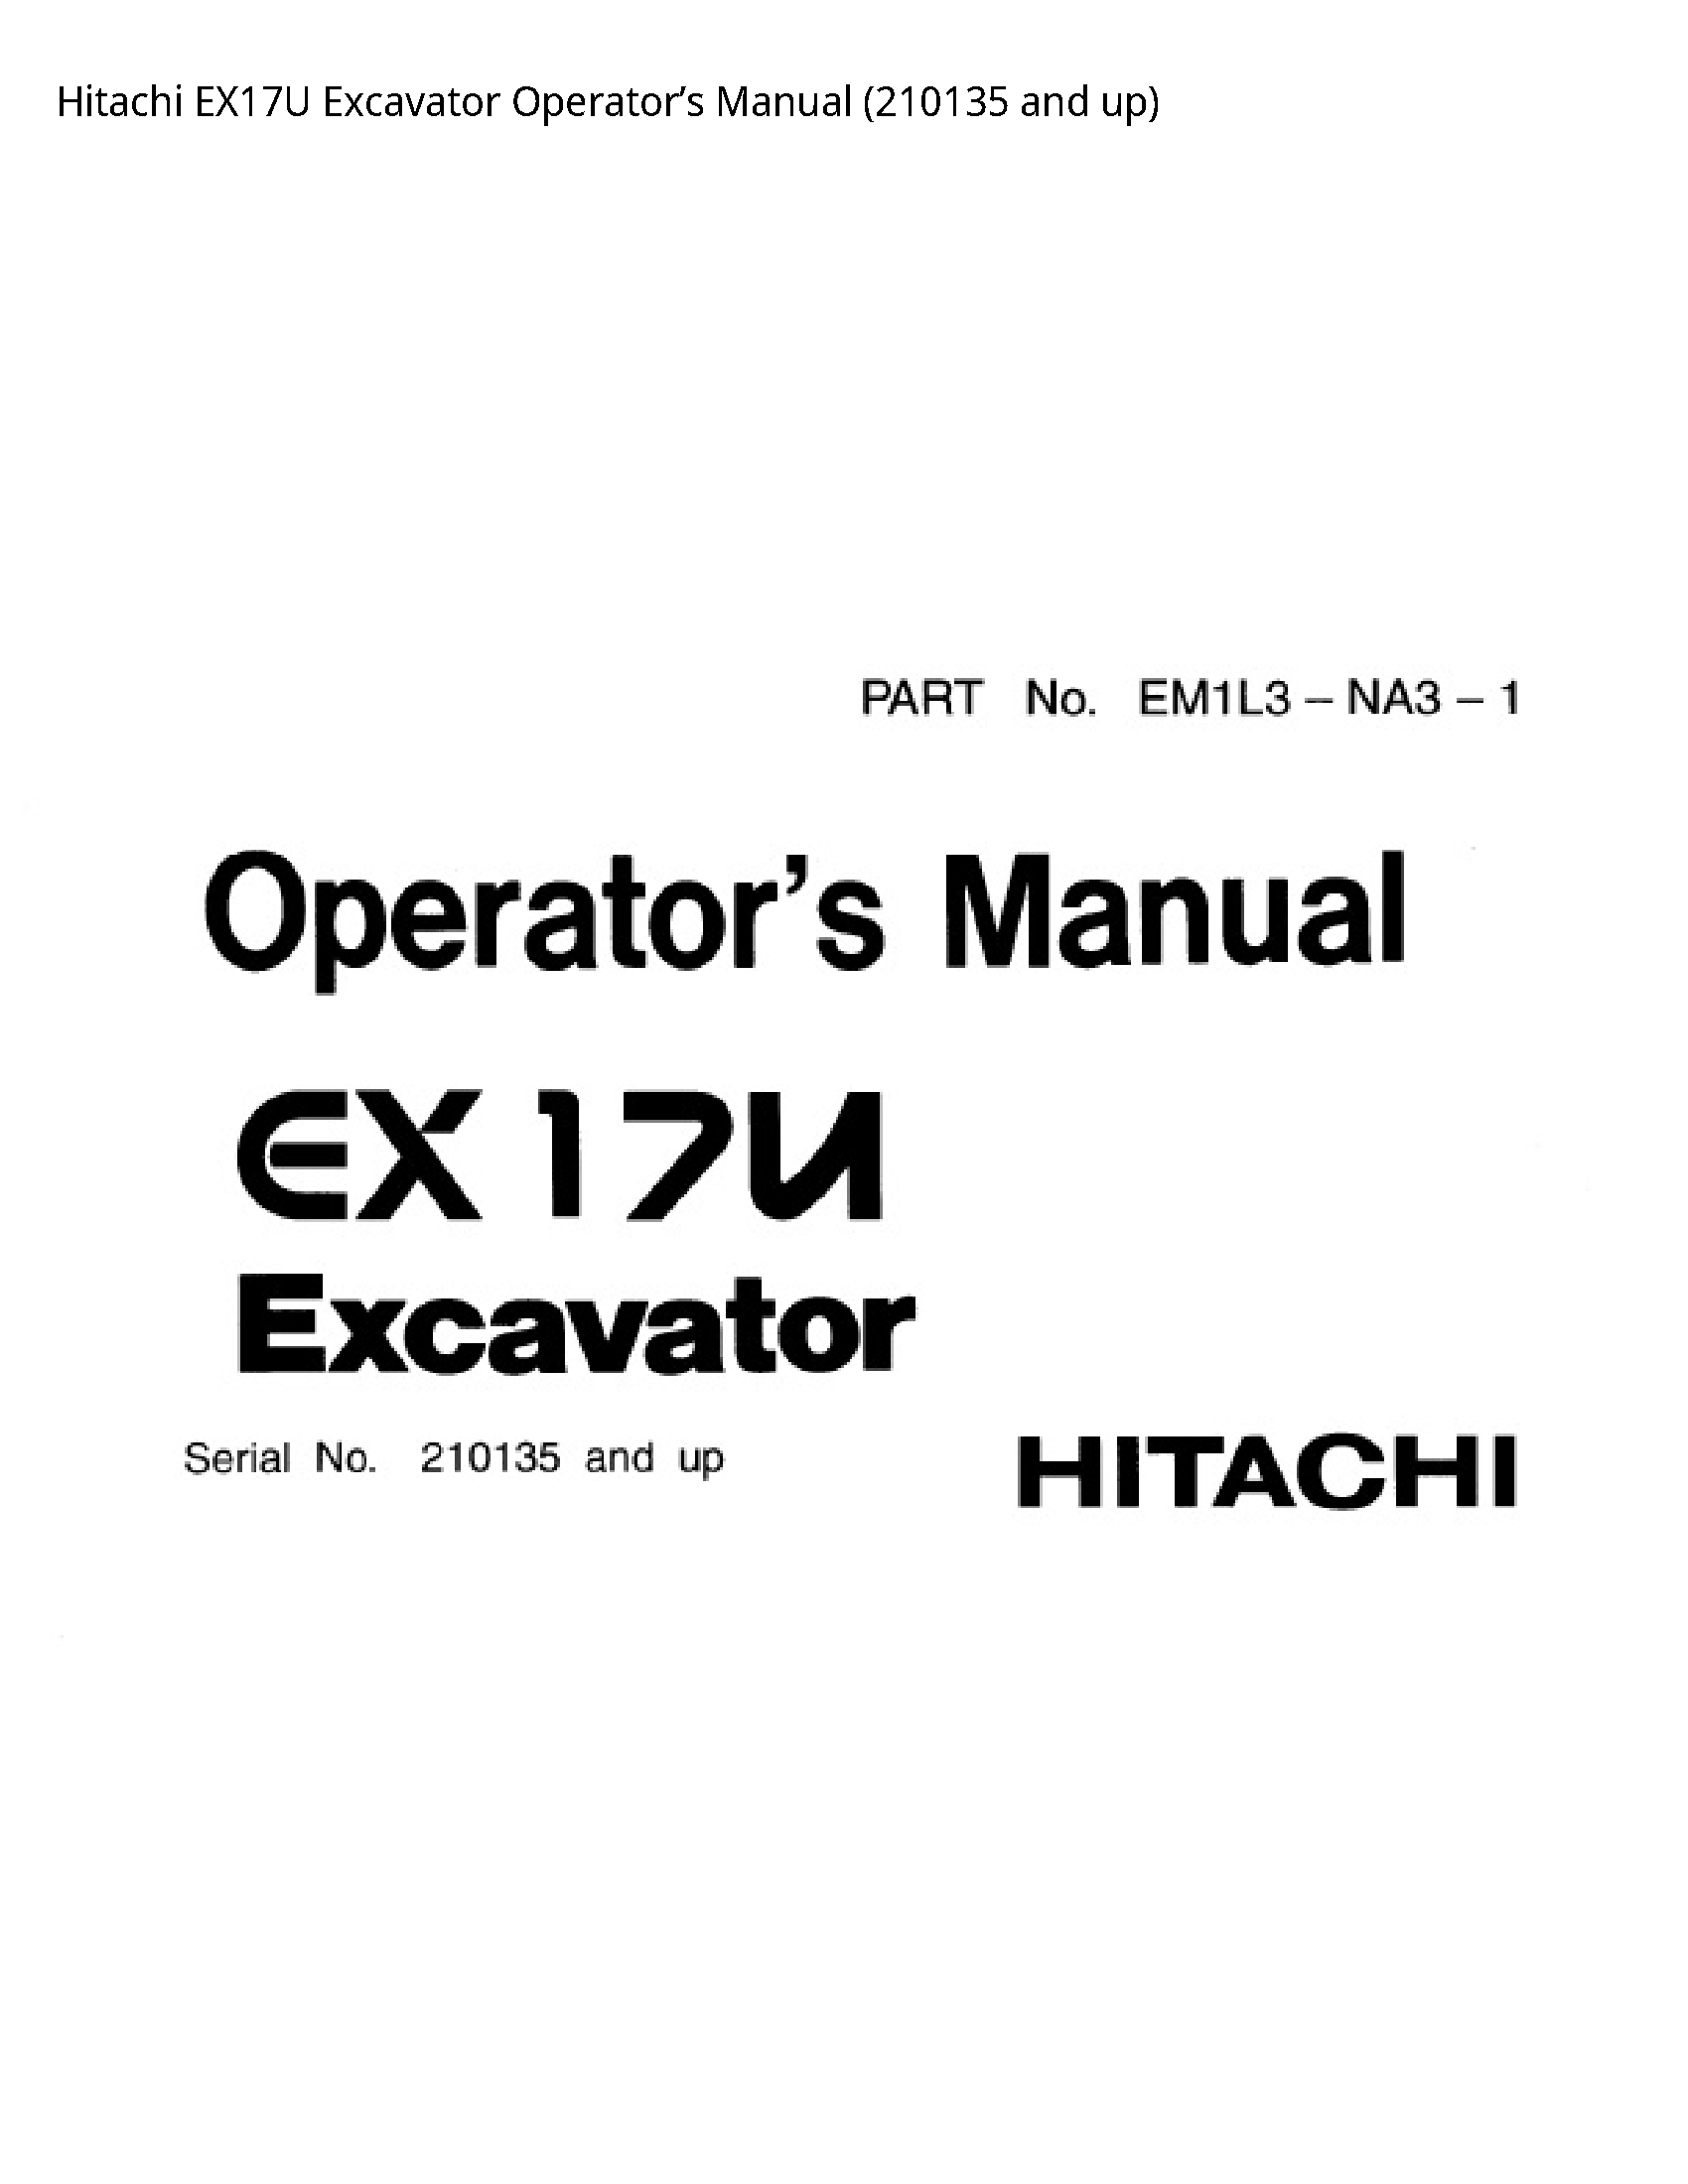 Hitachi EX17U Excavator Operator’s manual